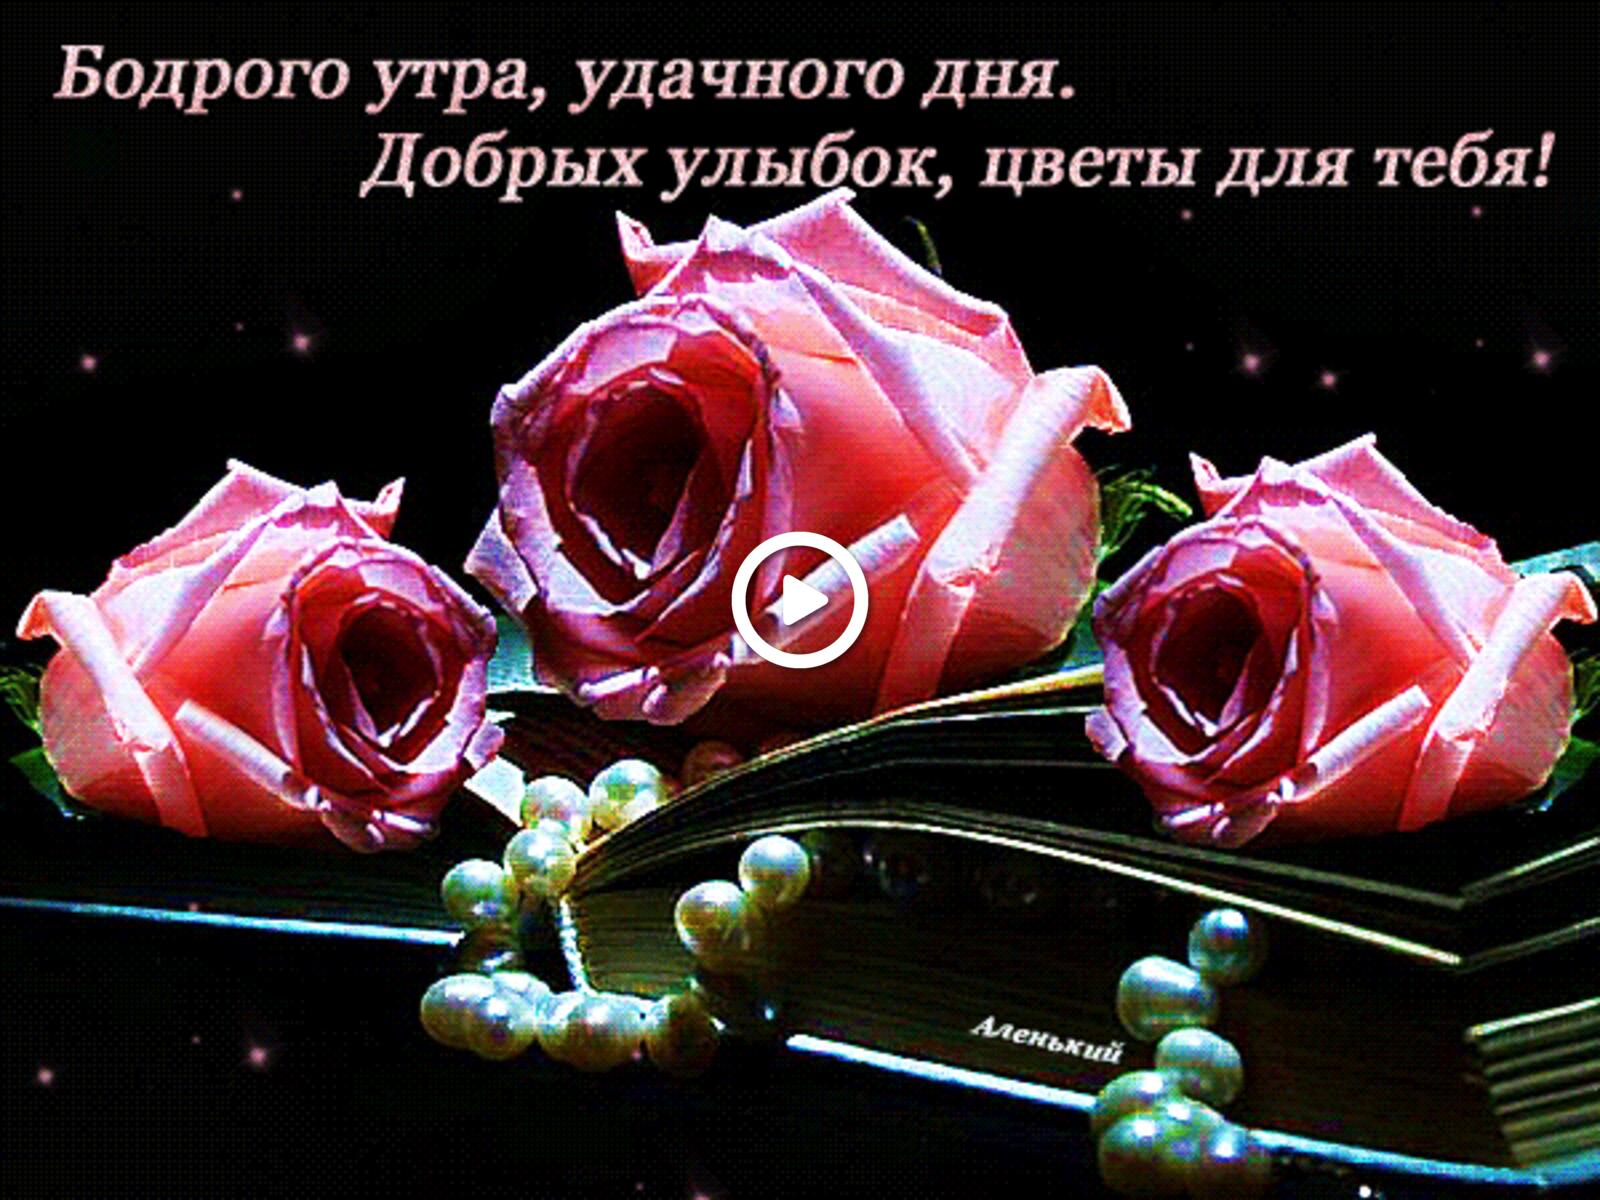 一张以玫瑰 早安 鲜花为主题的明信片